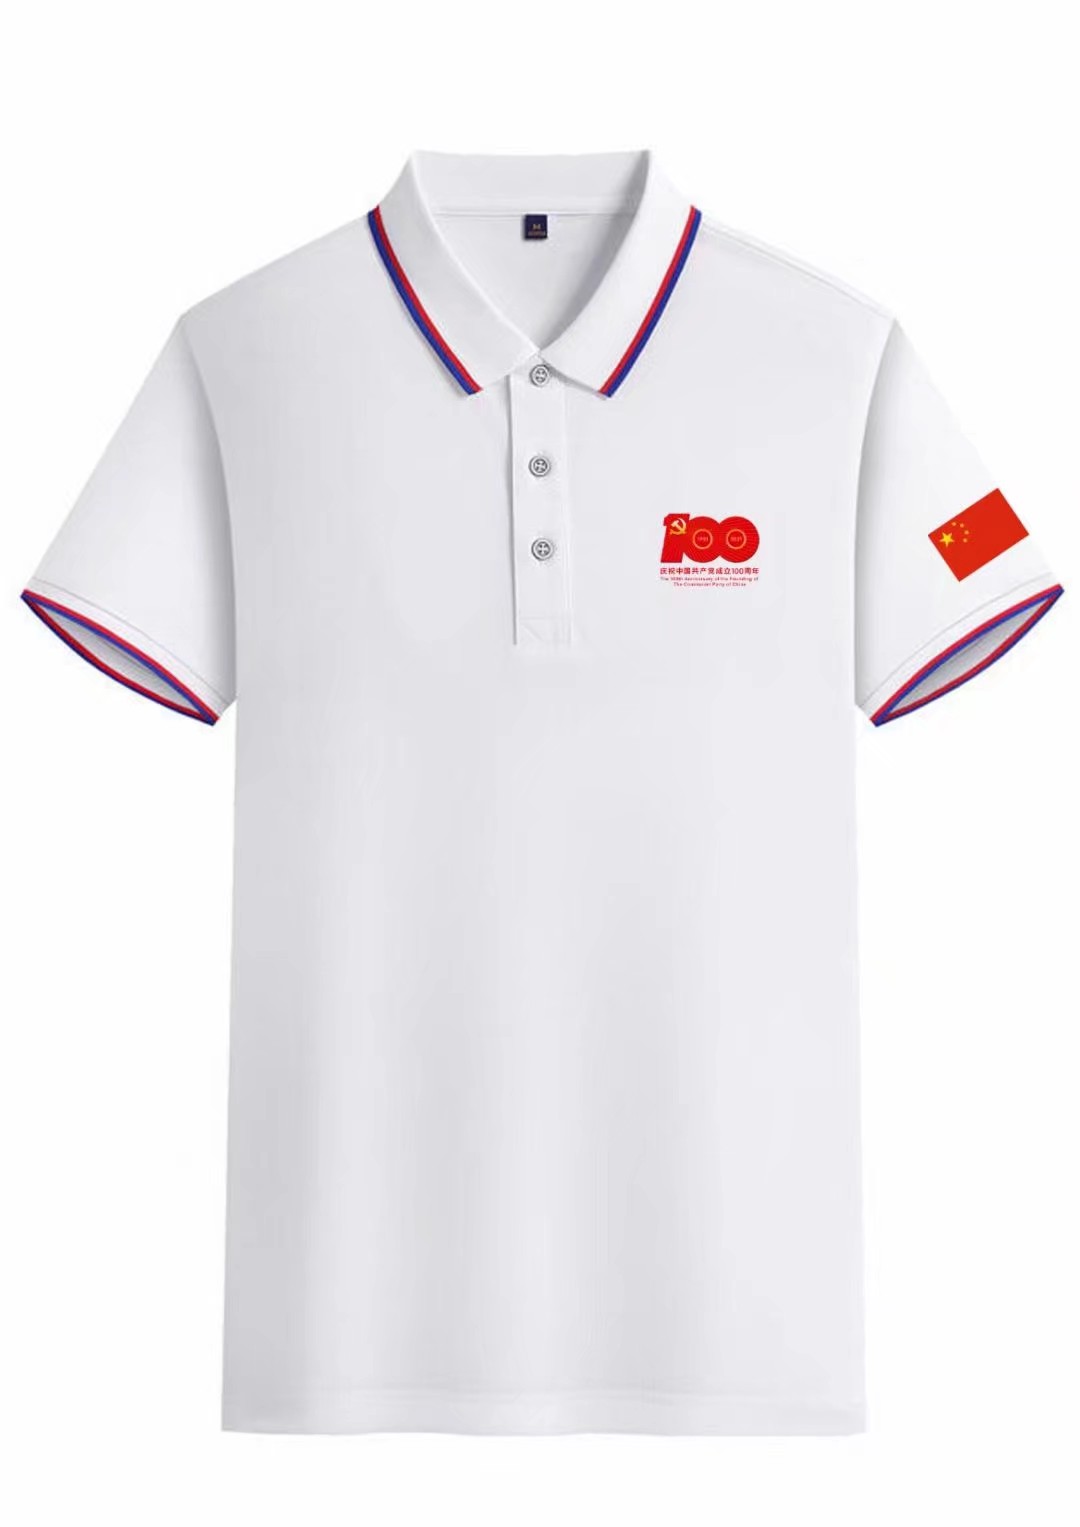 惠州生产广告衫代理 东莞市茶山华升服装设计服务部